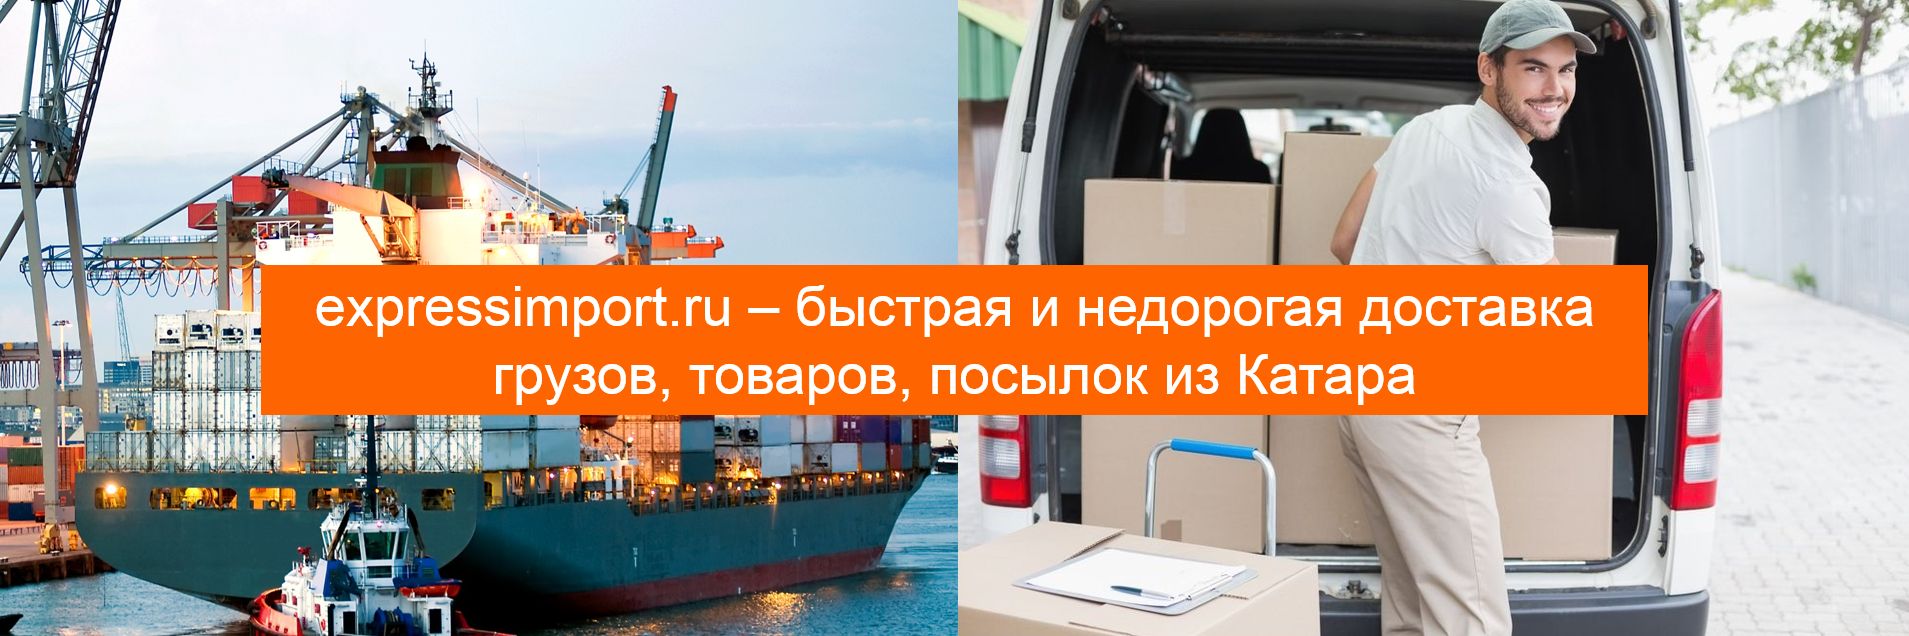 Доставка грузов, товаров, посылок из Катара в Россию